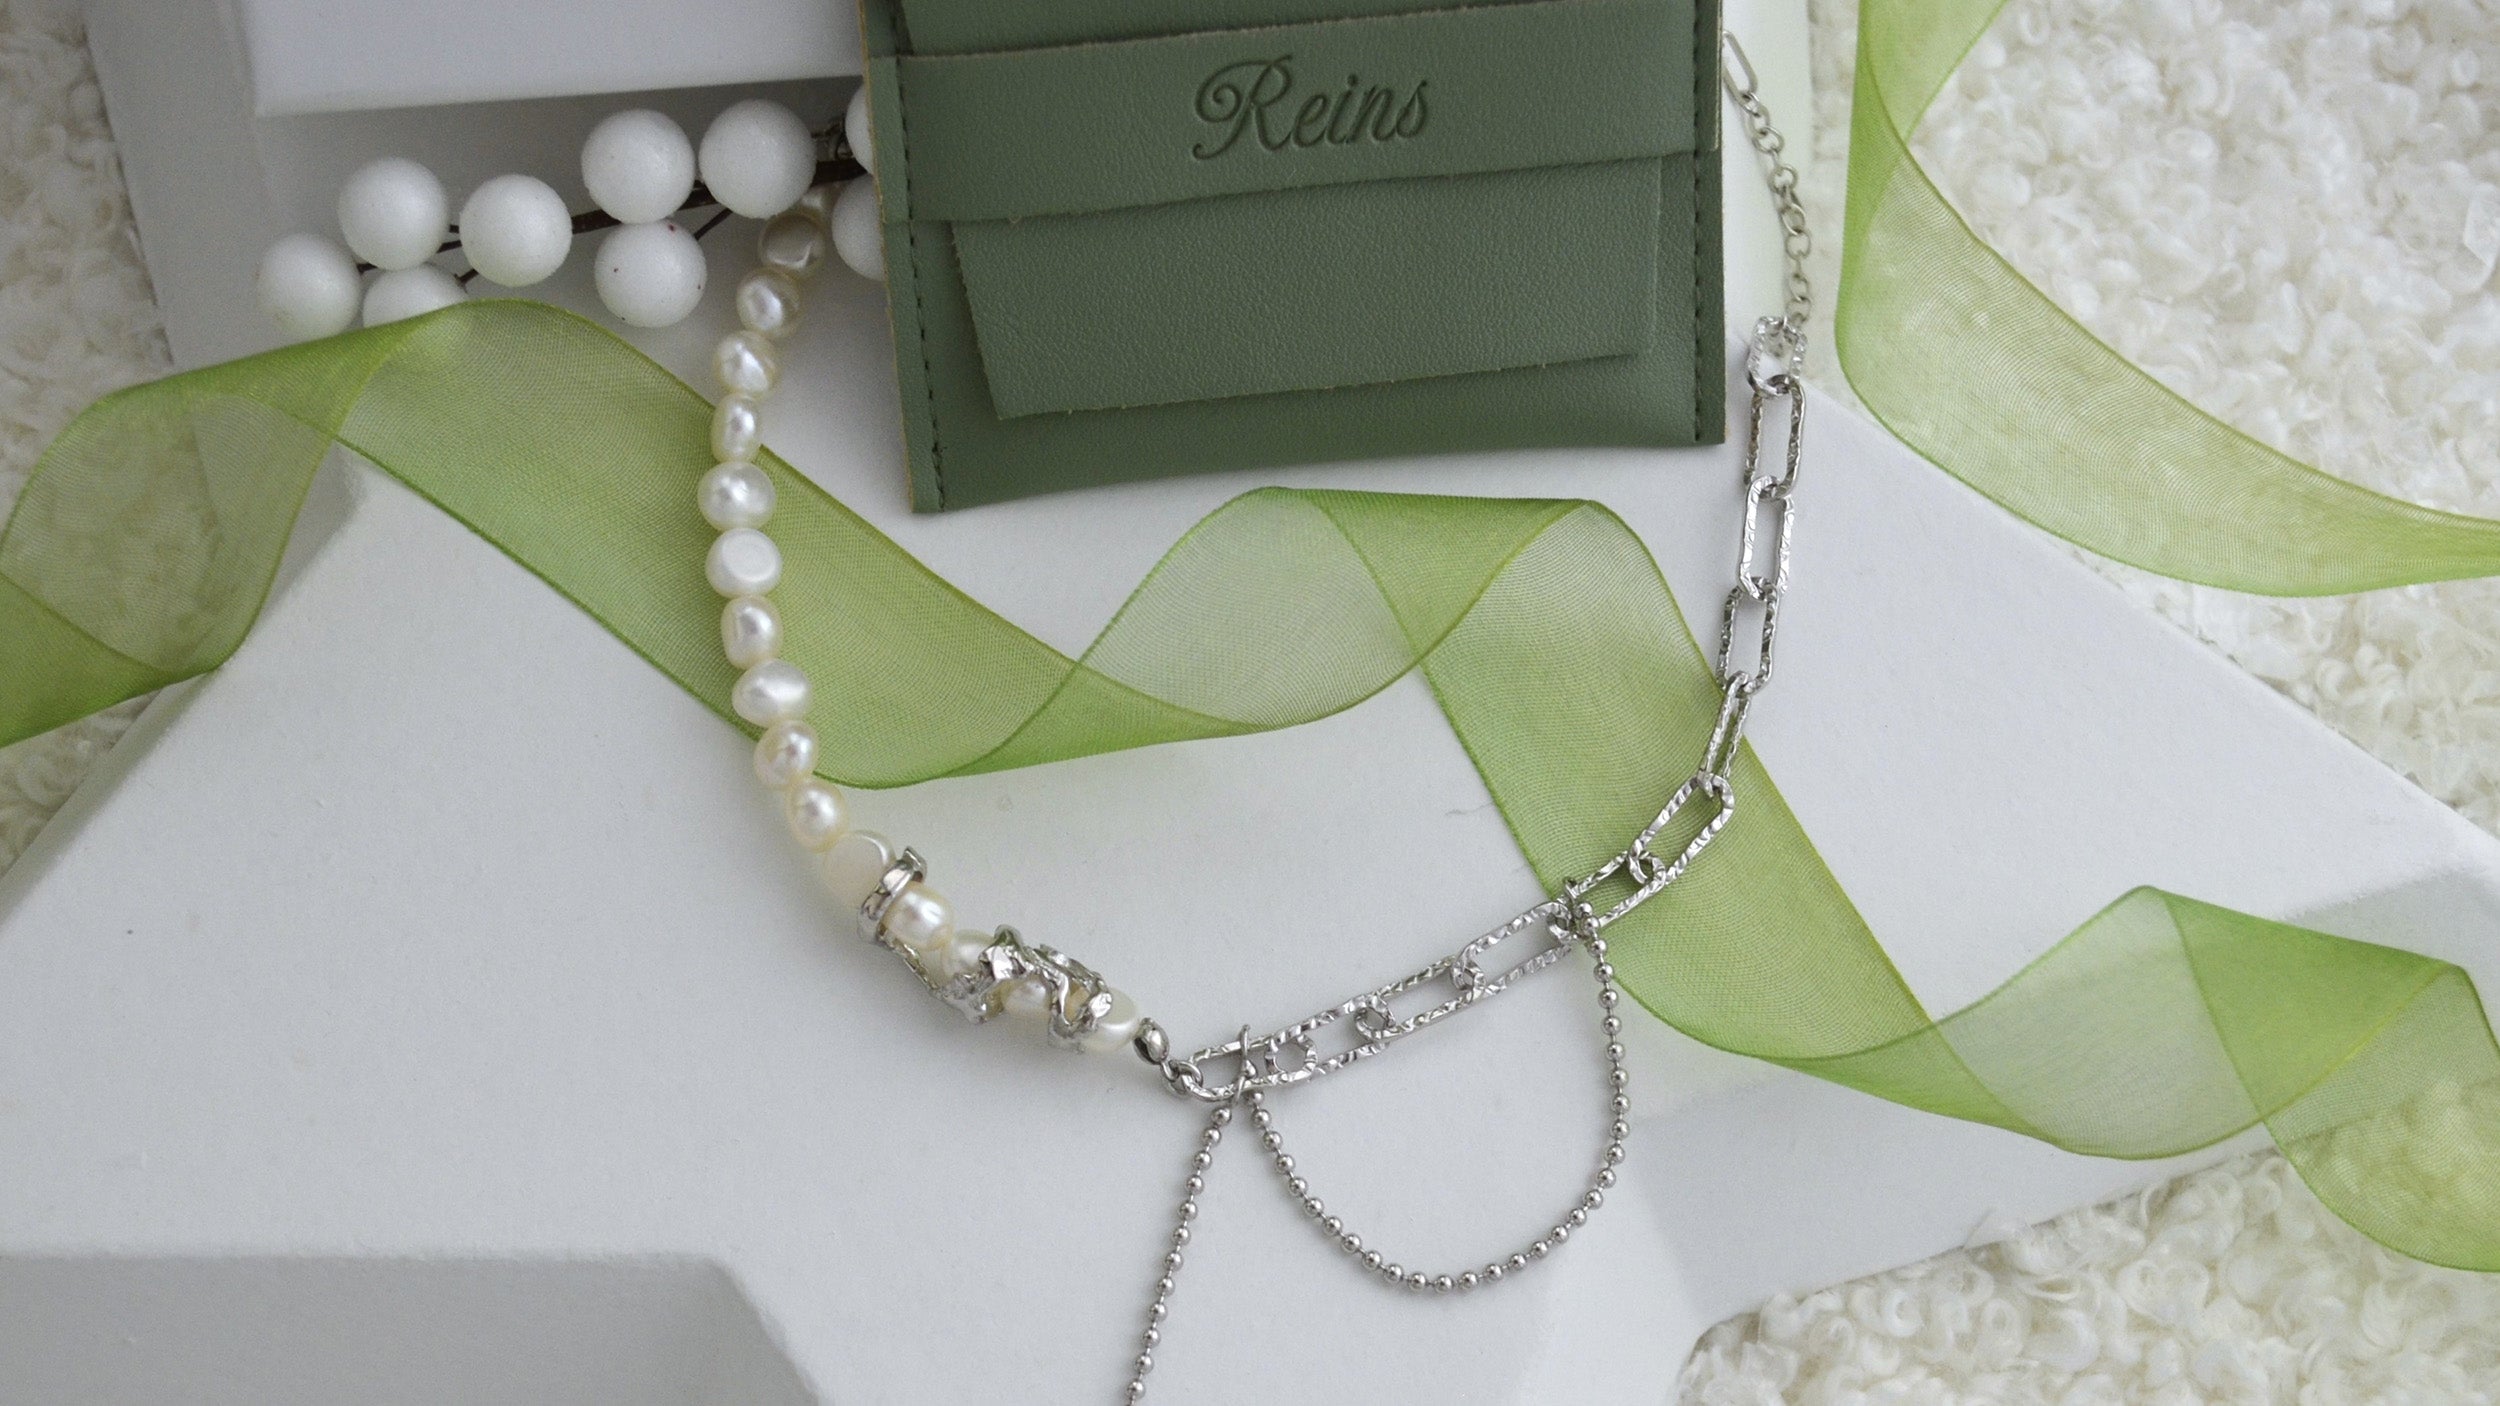 Colier din Argint Reins, cu perle naturale de apa dulce - Gothic Pearl, vedere detaliata, 01R01-0012